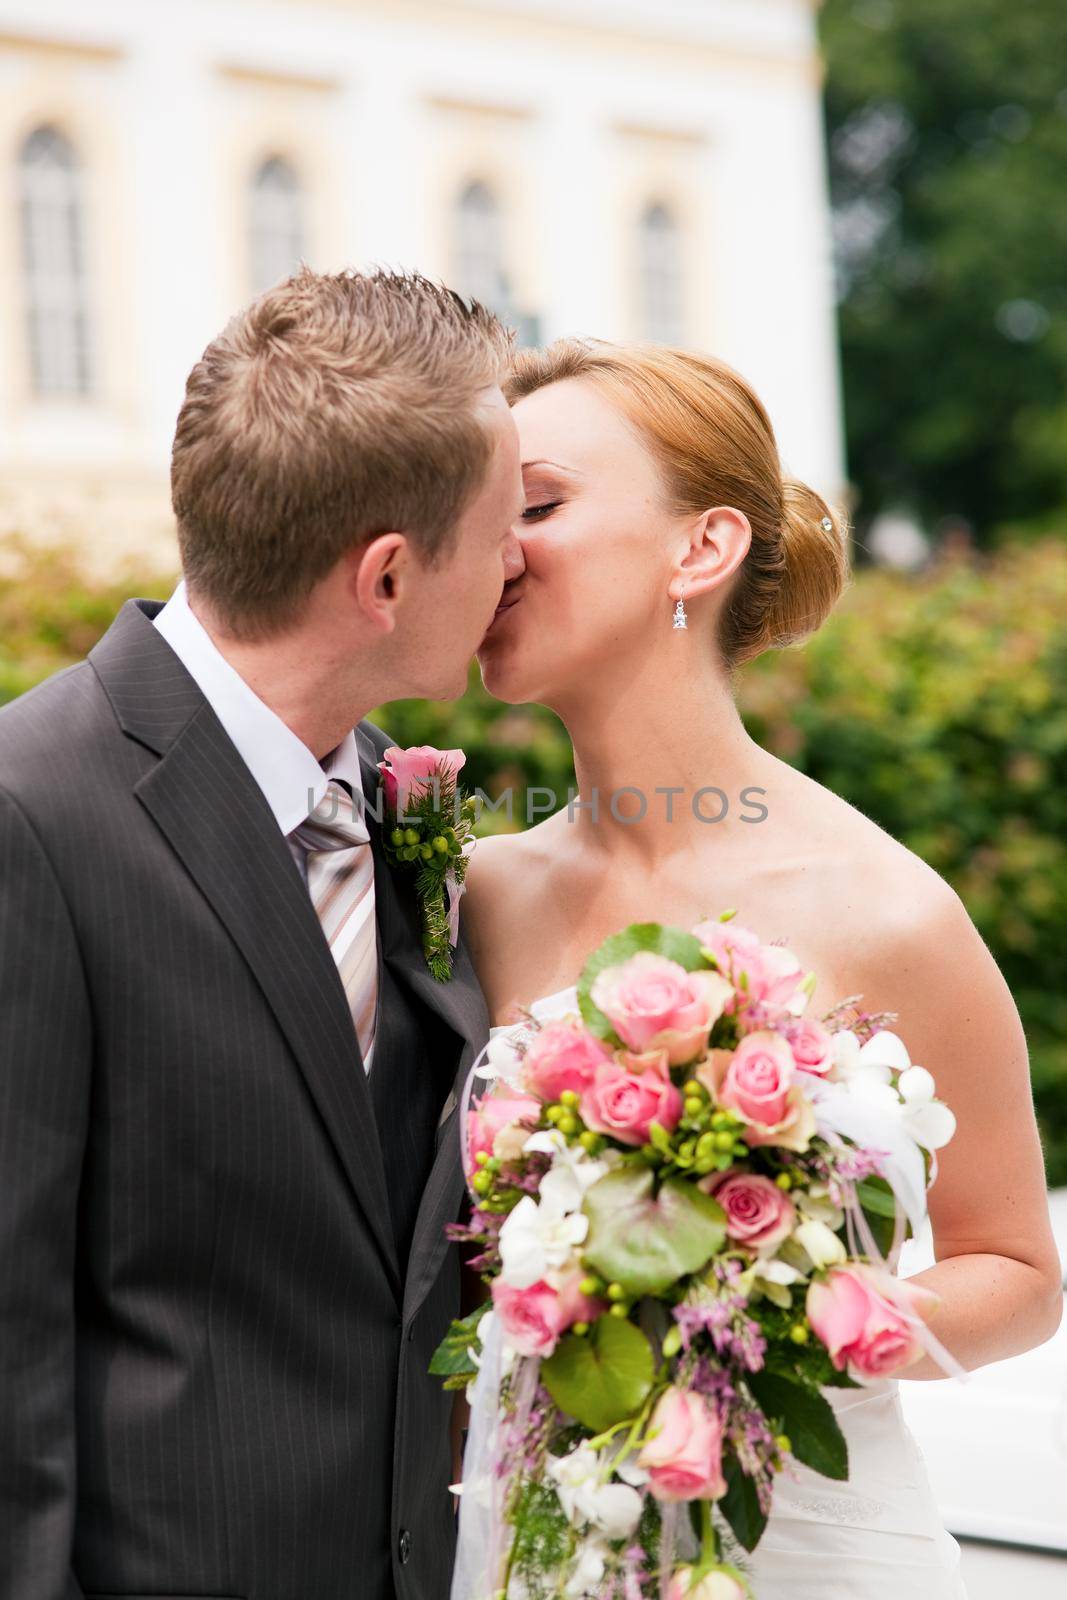 Wedding - kissing in park by Kzenon